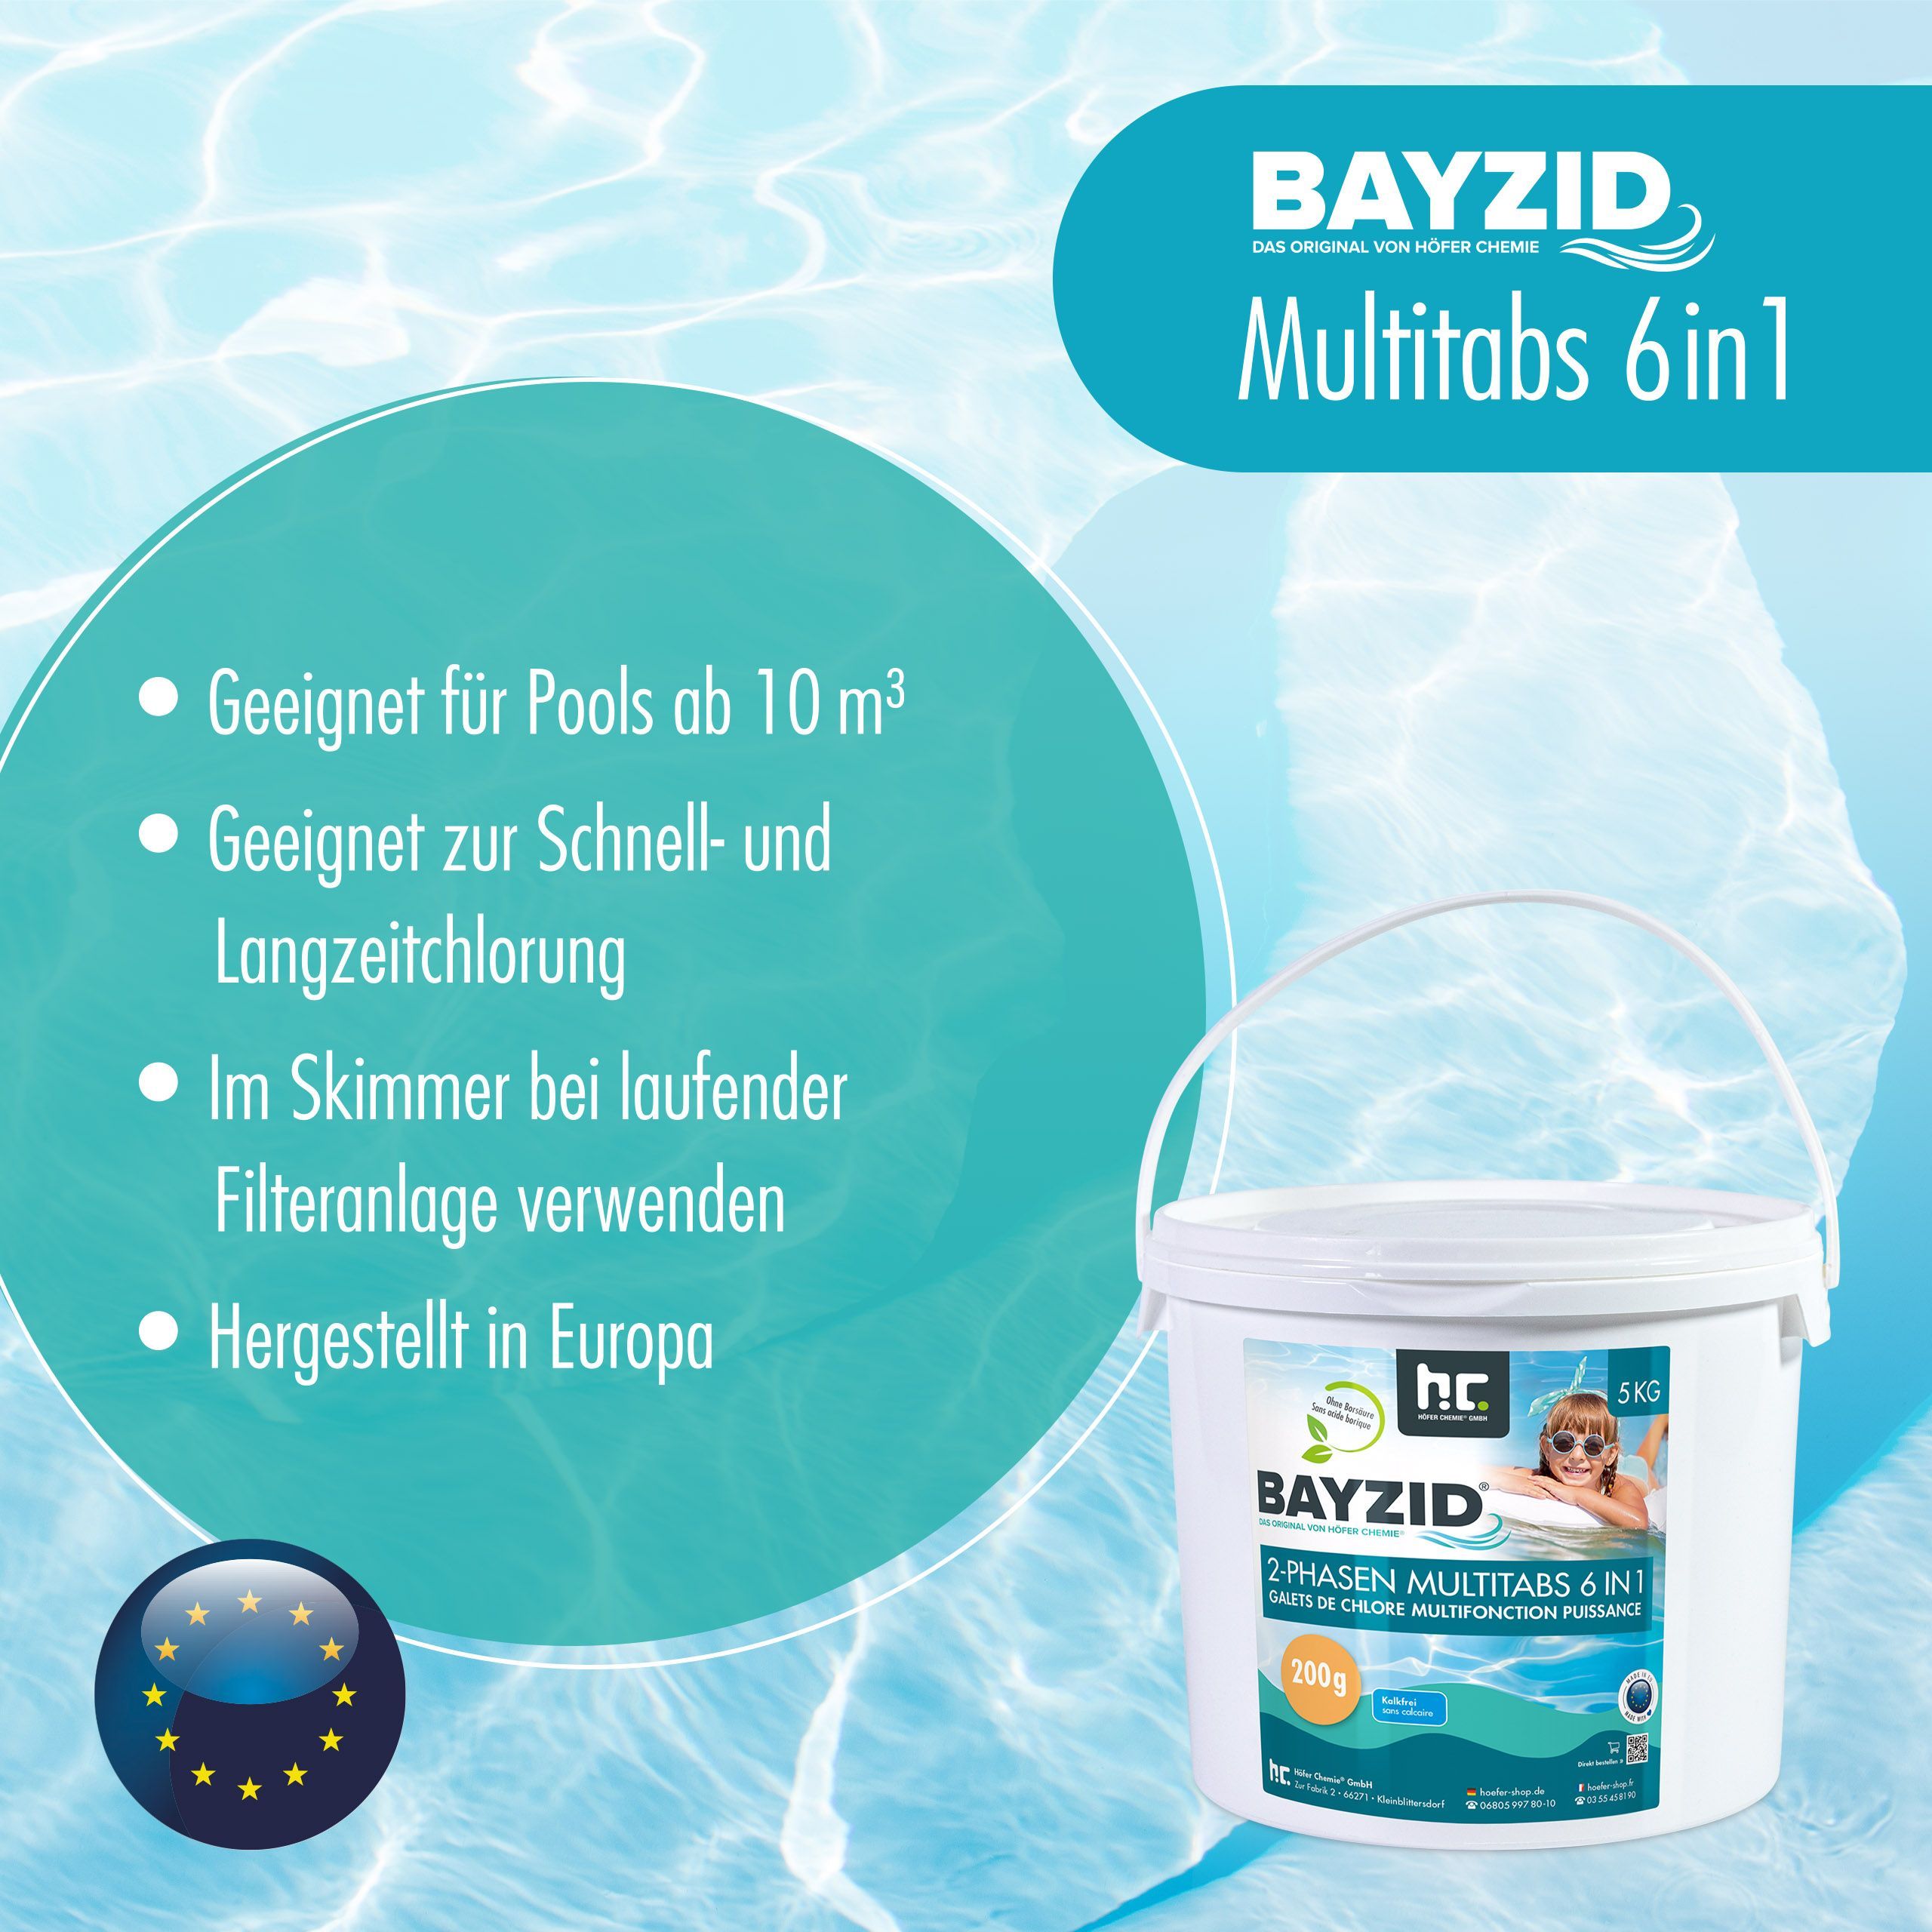 5 kg BAYZID® Galets de chlore biphases (200g) 6en1